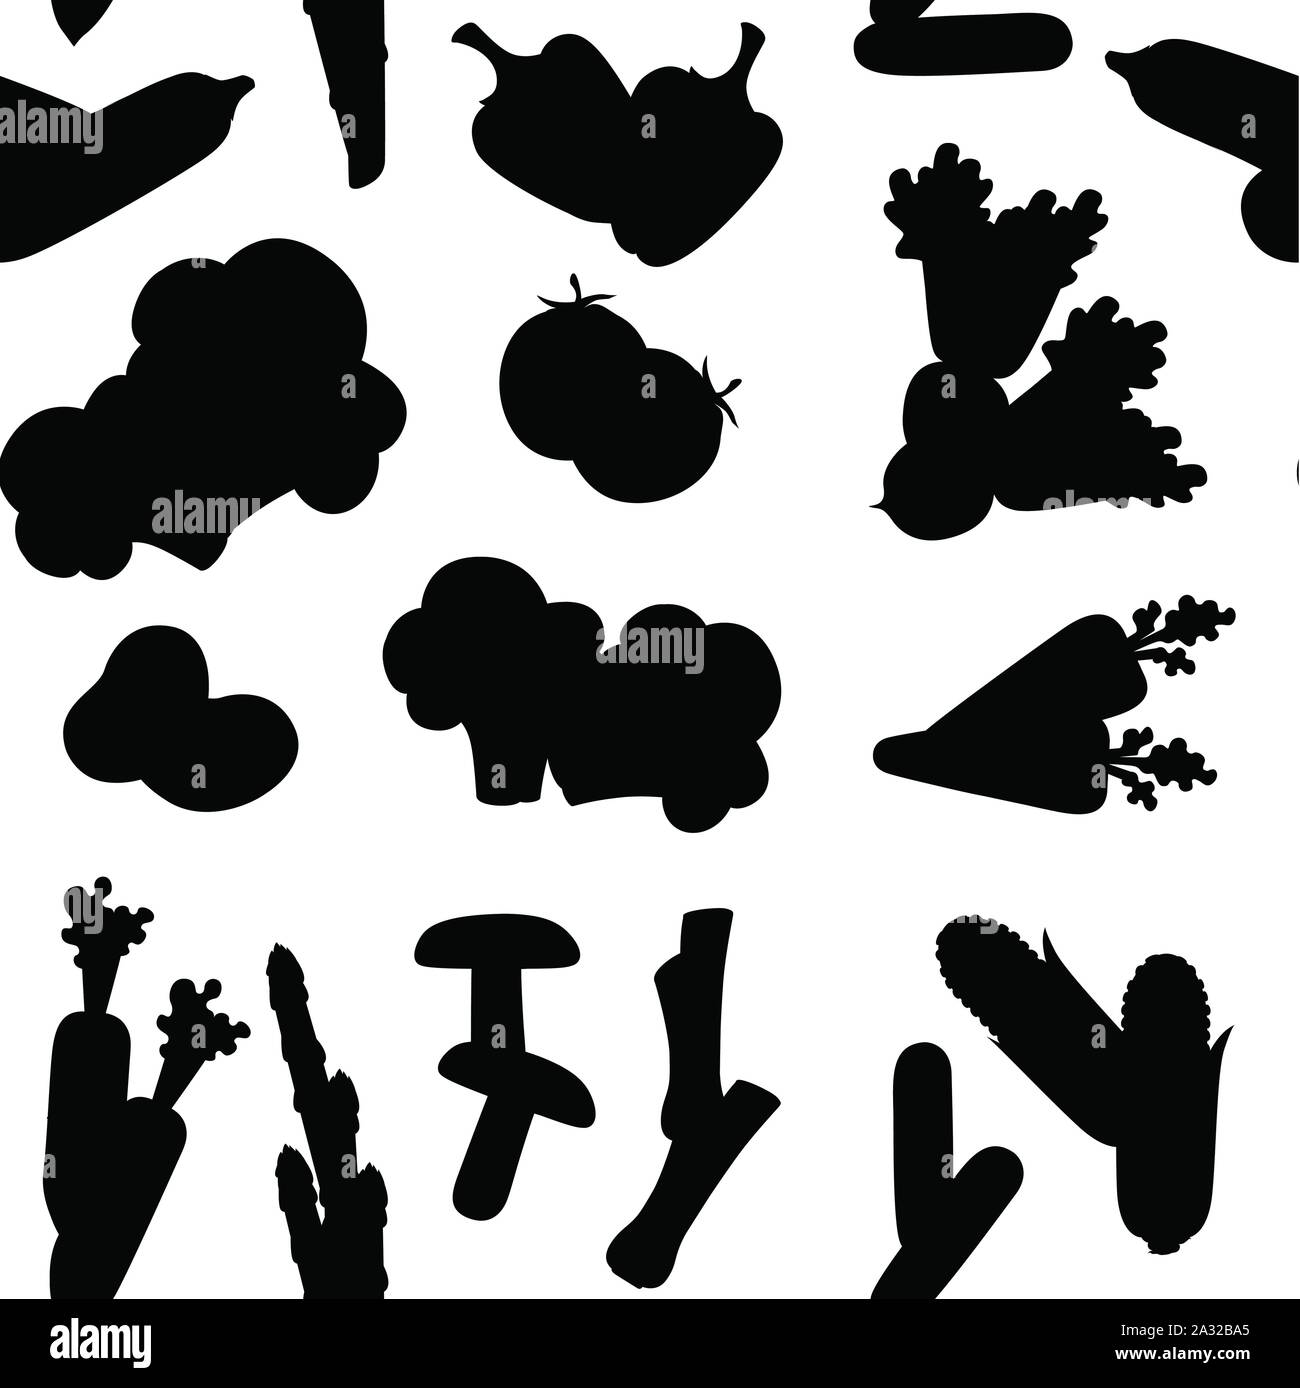 Schwarze silhouette nahtlose Muster der frischen, rohen Gemüse flachbild Vector Illustration auf weißem Hintergrund. Stock Vektor